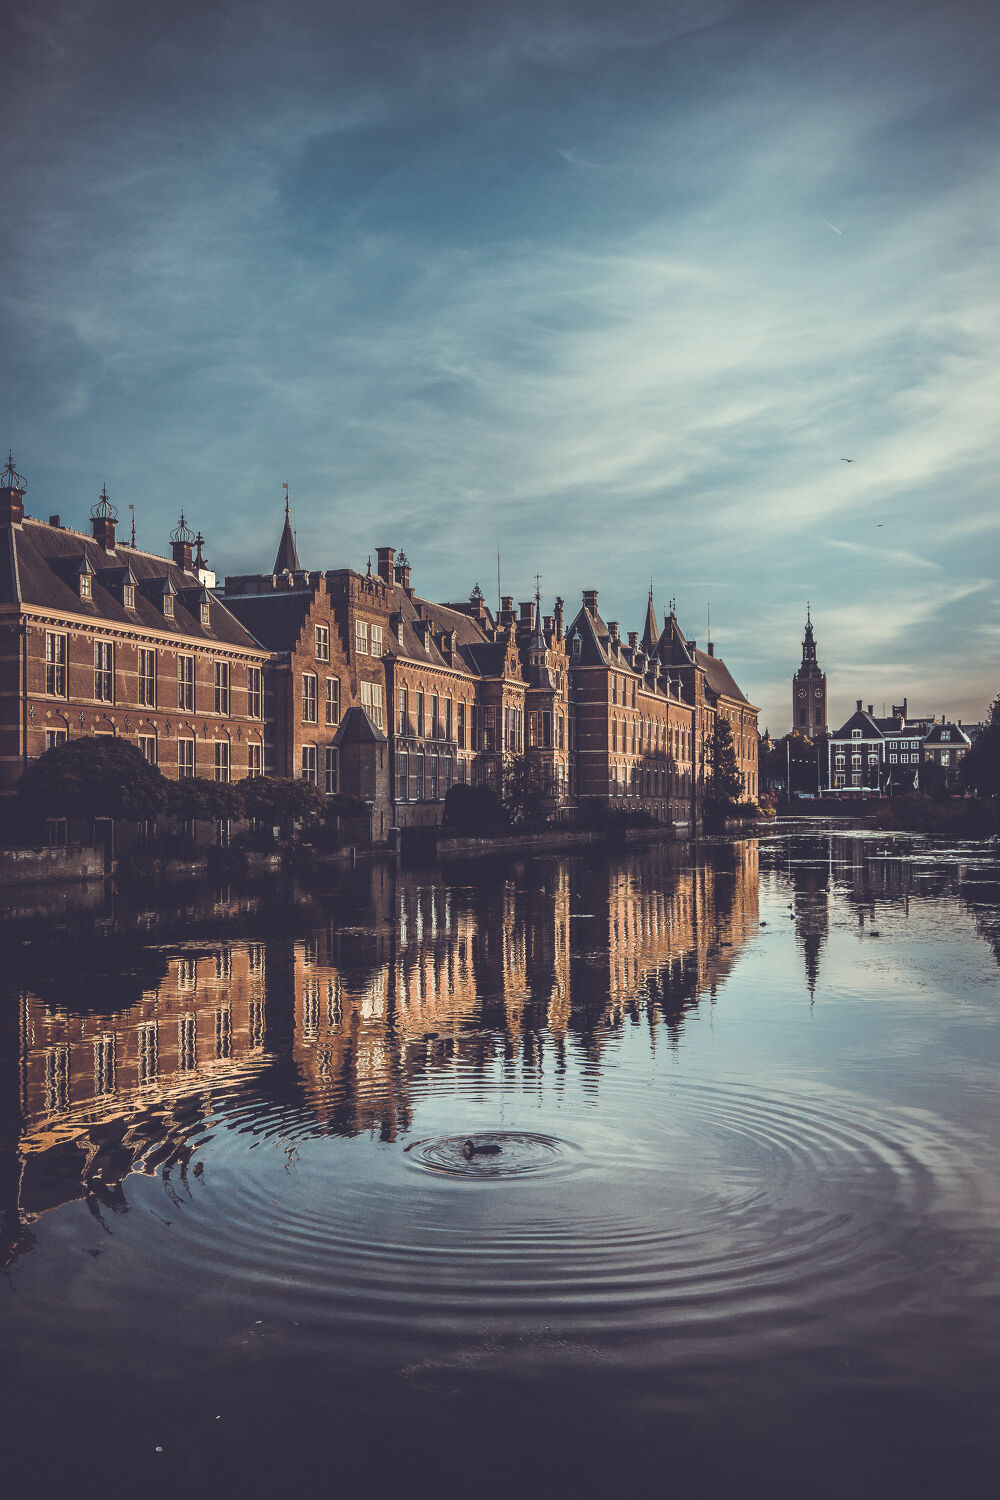 Bild mit Ente im Wasser, Altstadt, Wasserblick, Stadtansichten, Historische Gebäude, Schwimmente, Abendstimmung, Abendidylle, cityscape, Den Haag